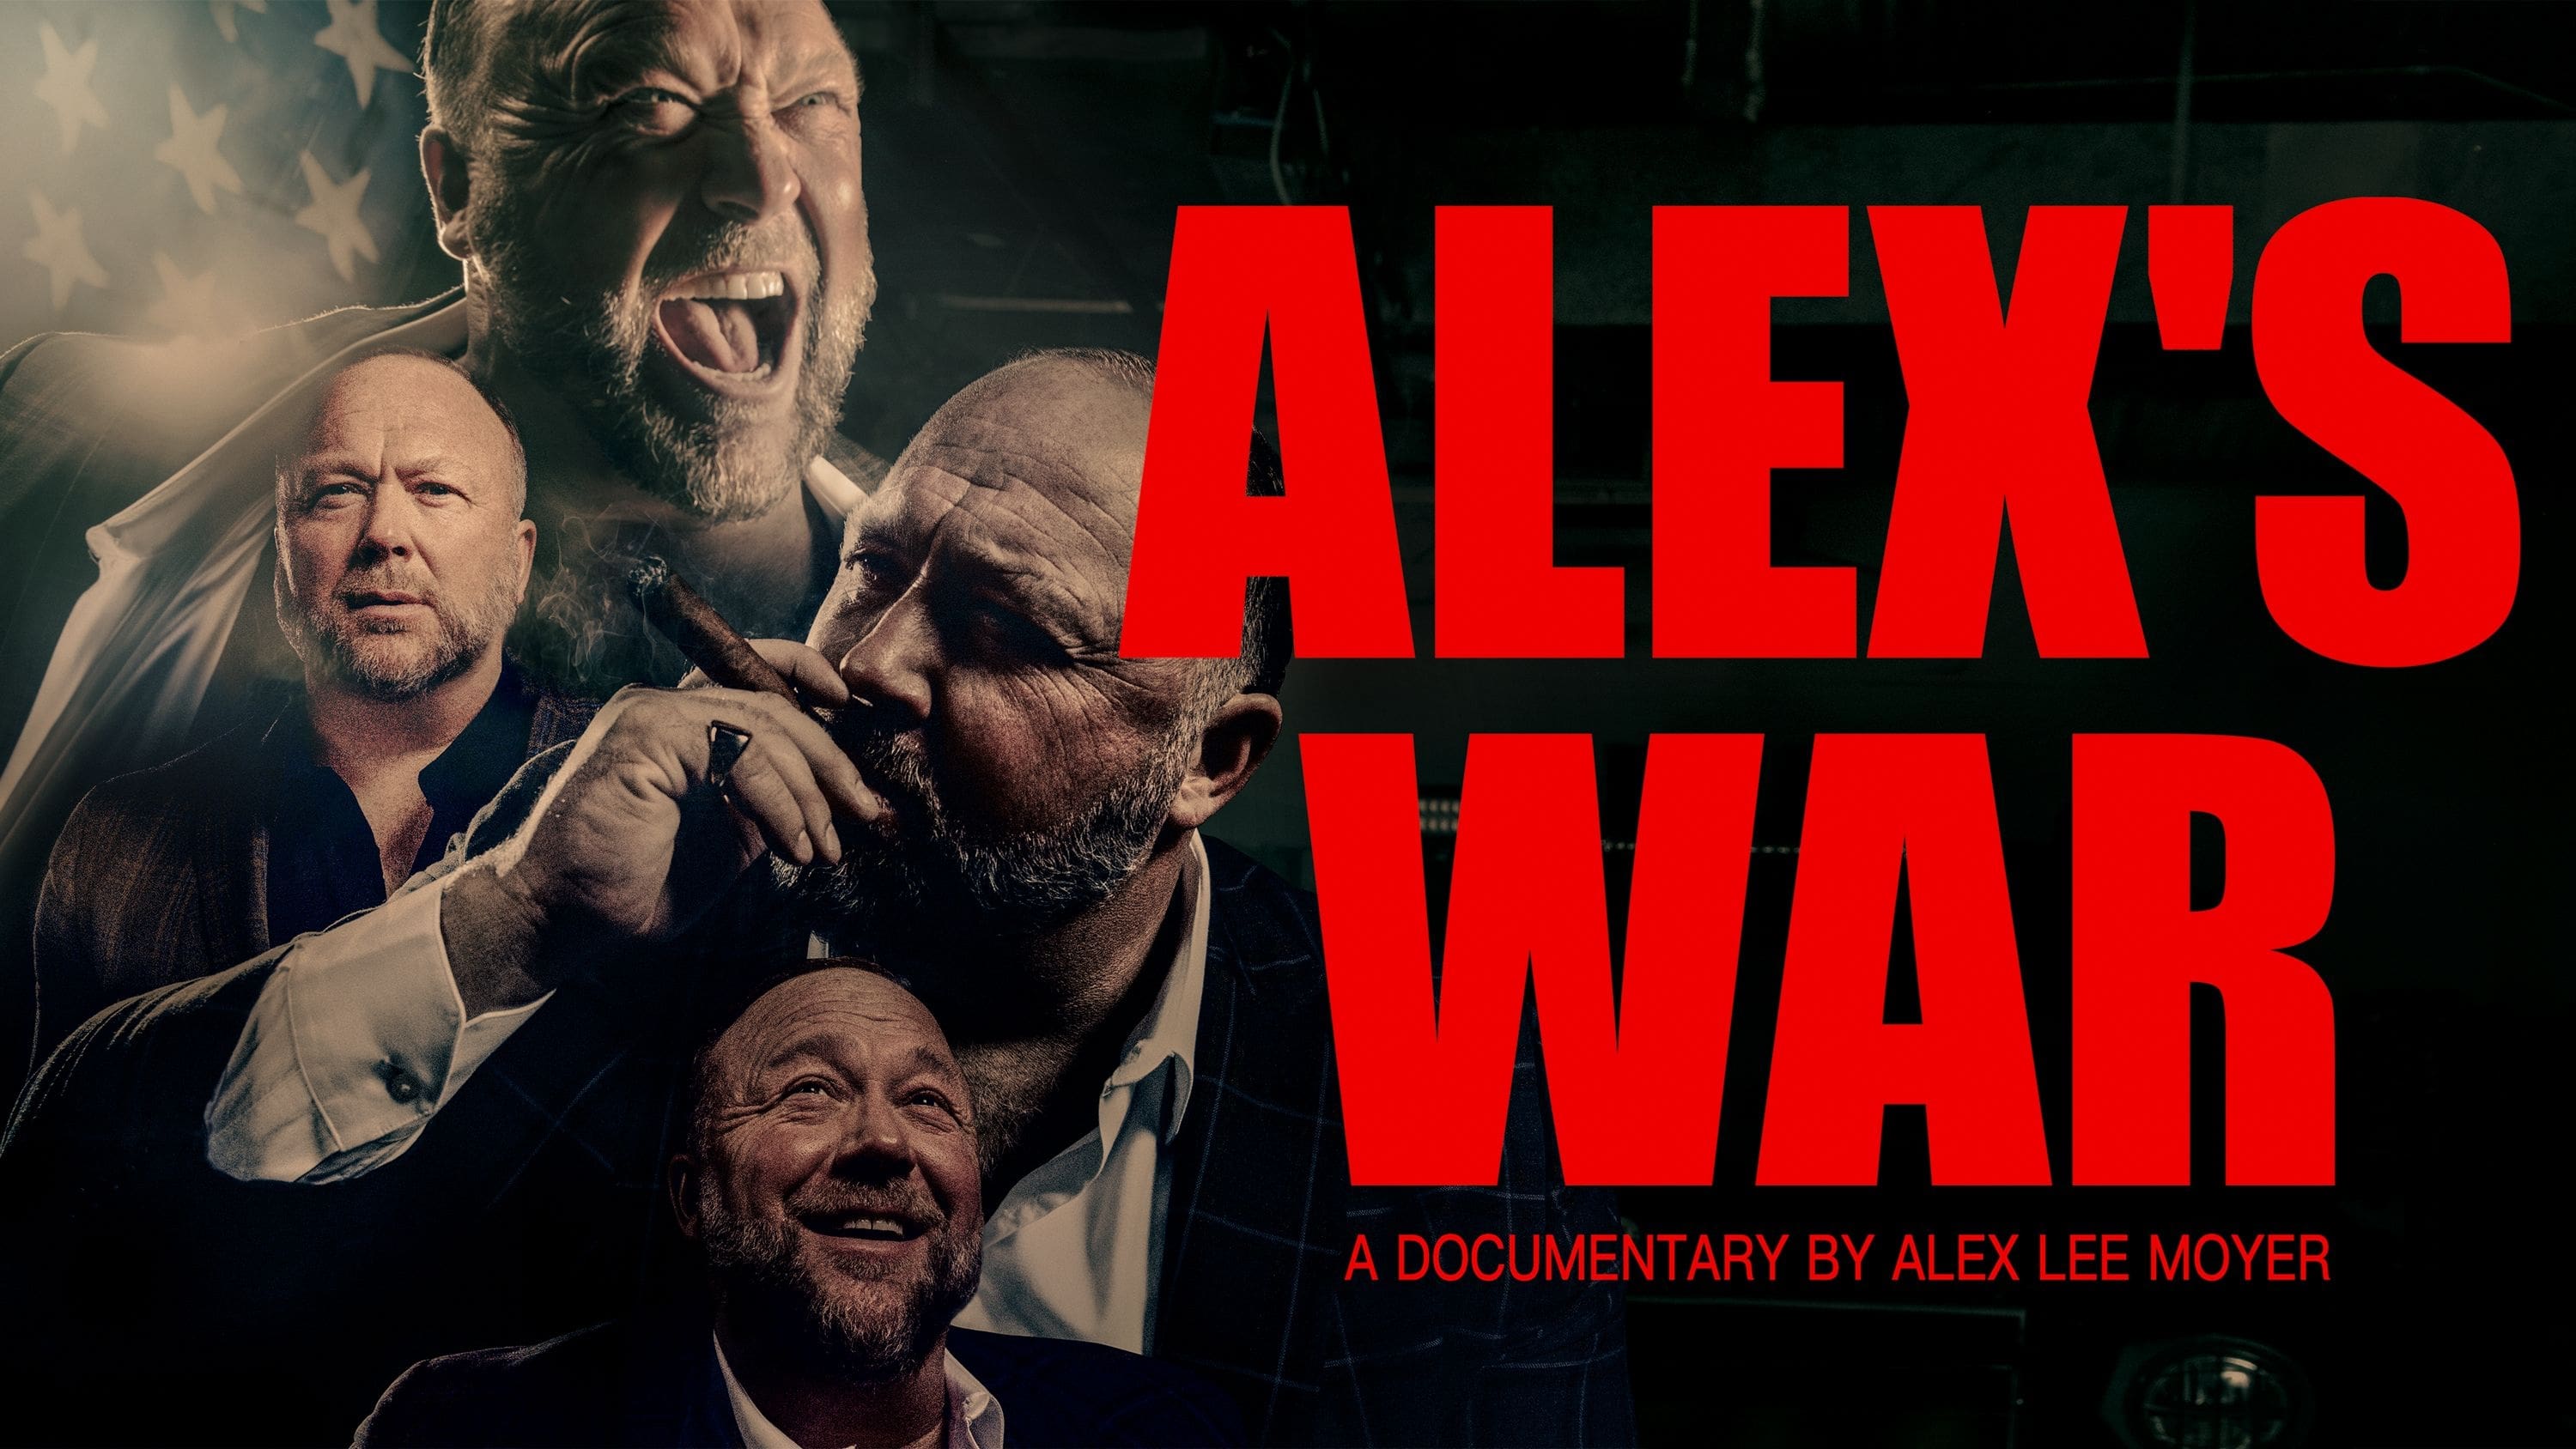 Alex’s War